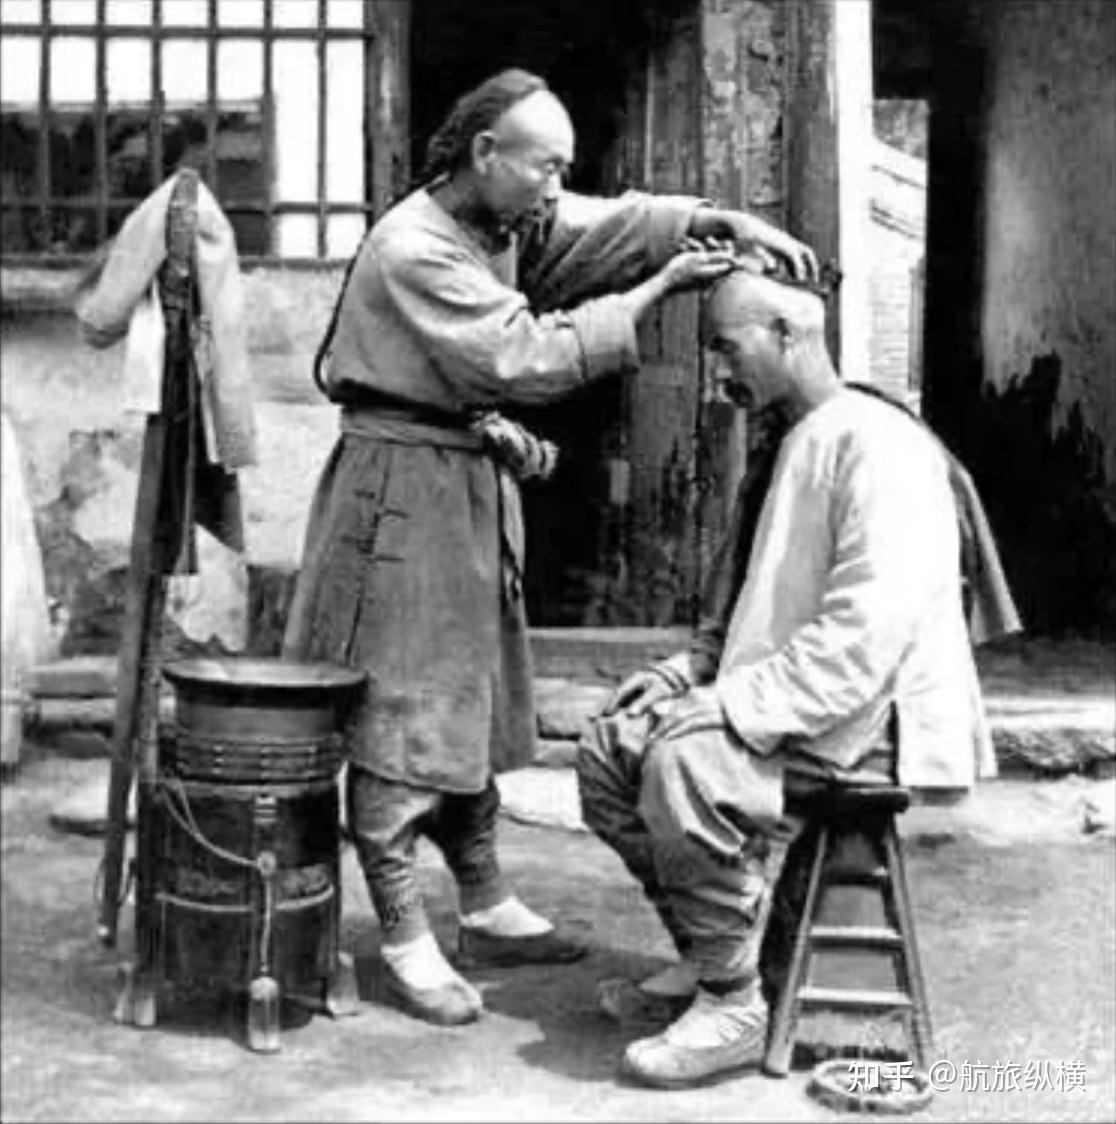 虽然满清剃发易服政策受到大批抵抗,但迫于统治者的压力,大部分汉族人